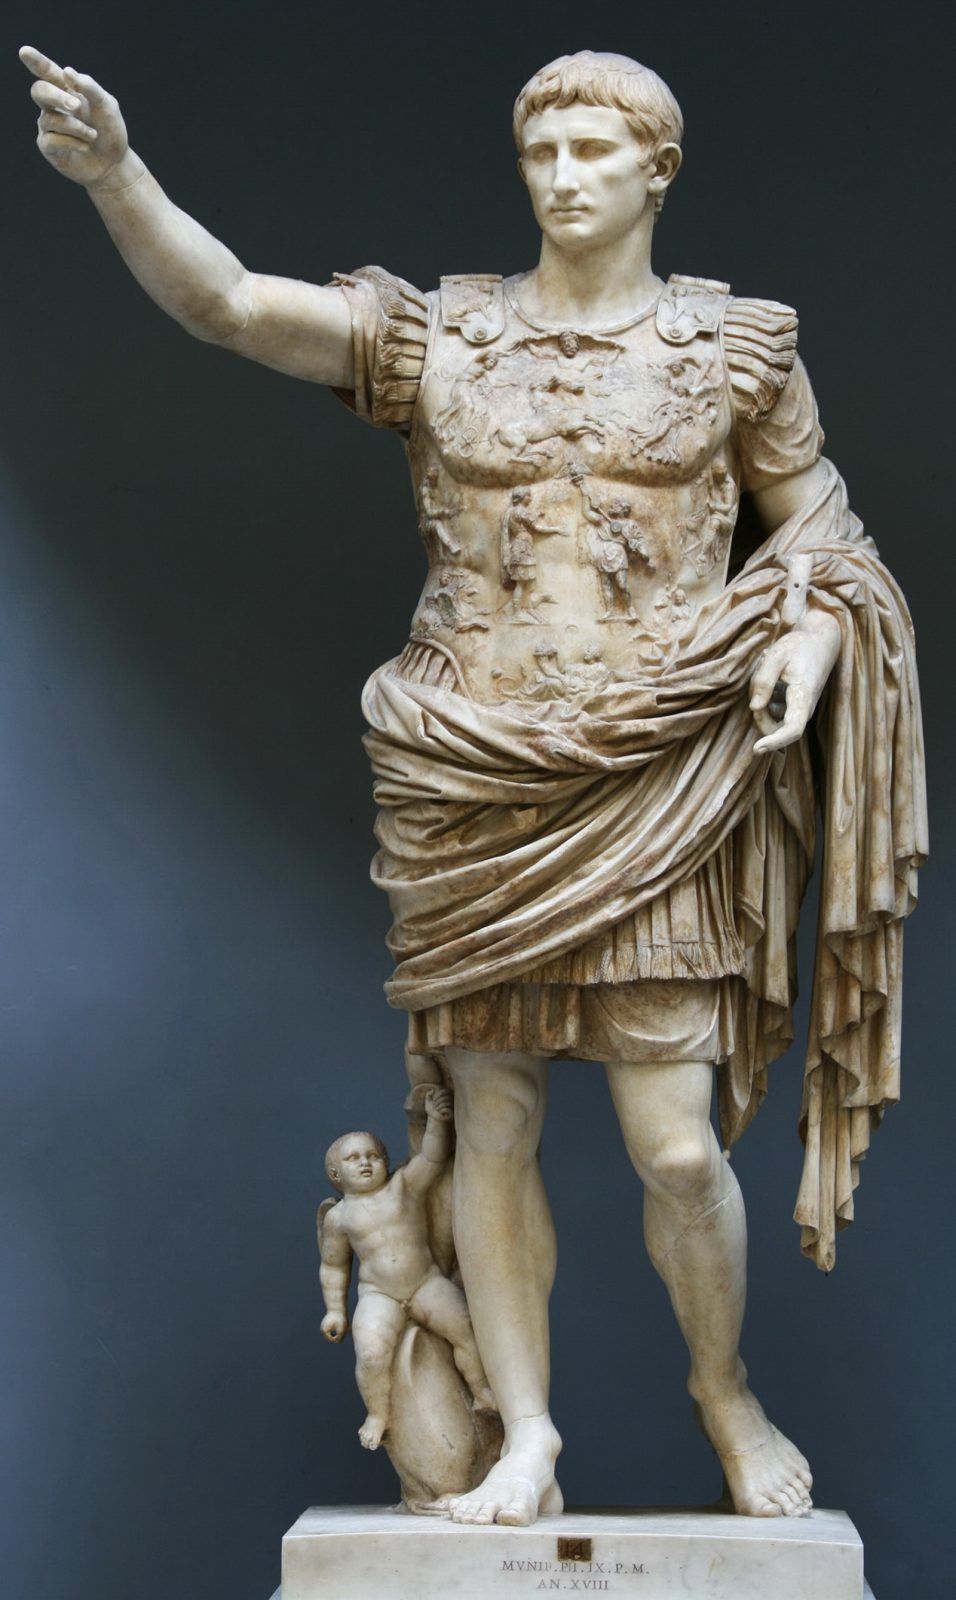 СЕНАТОР представляет: статуя Октавиана Августа из Примы Порты — Octavianus Augustus